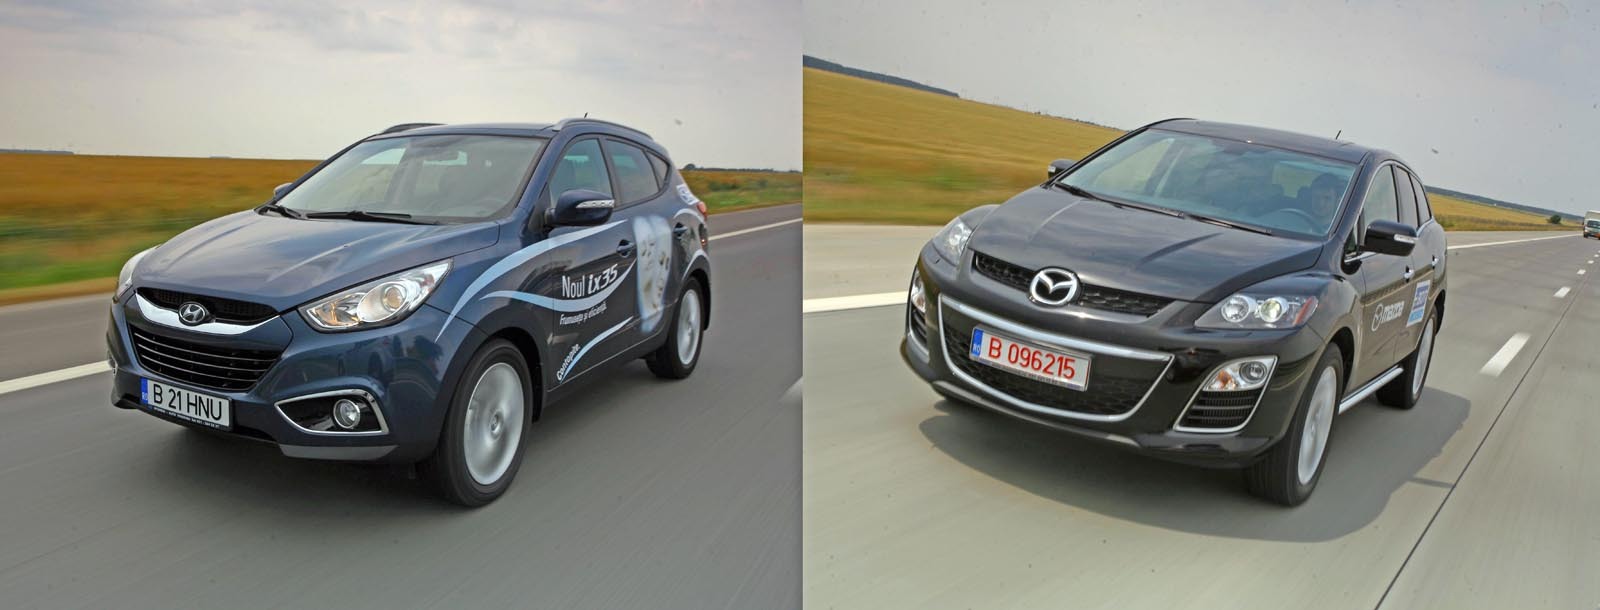 Mazda CX-7 justifica diferenta fata de Hyundai ix35 prin stilul mai elevat si comportamentul superior